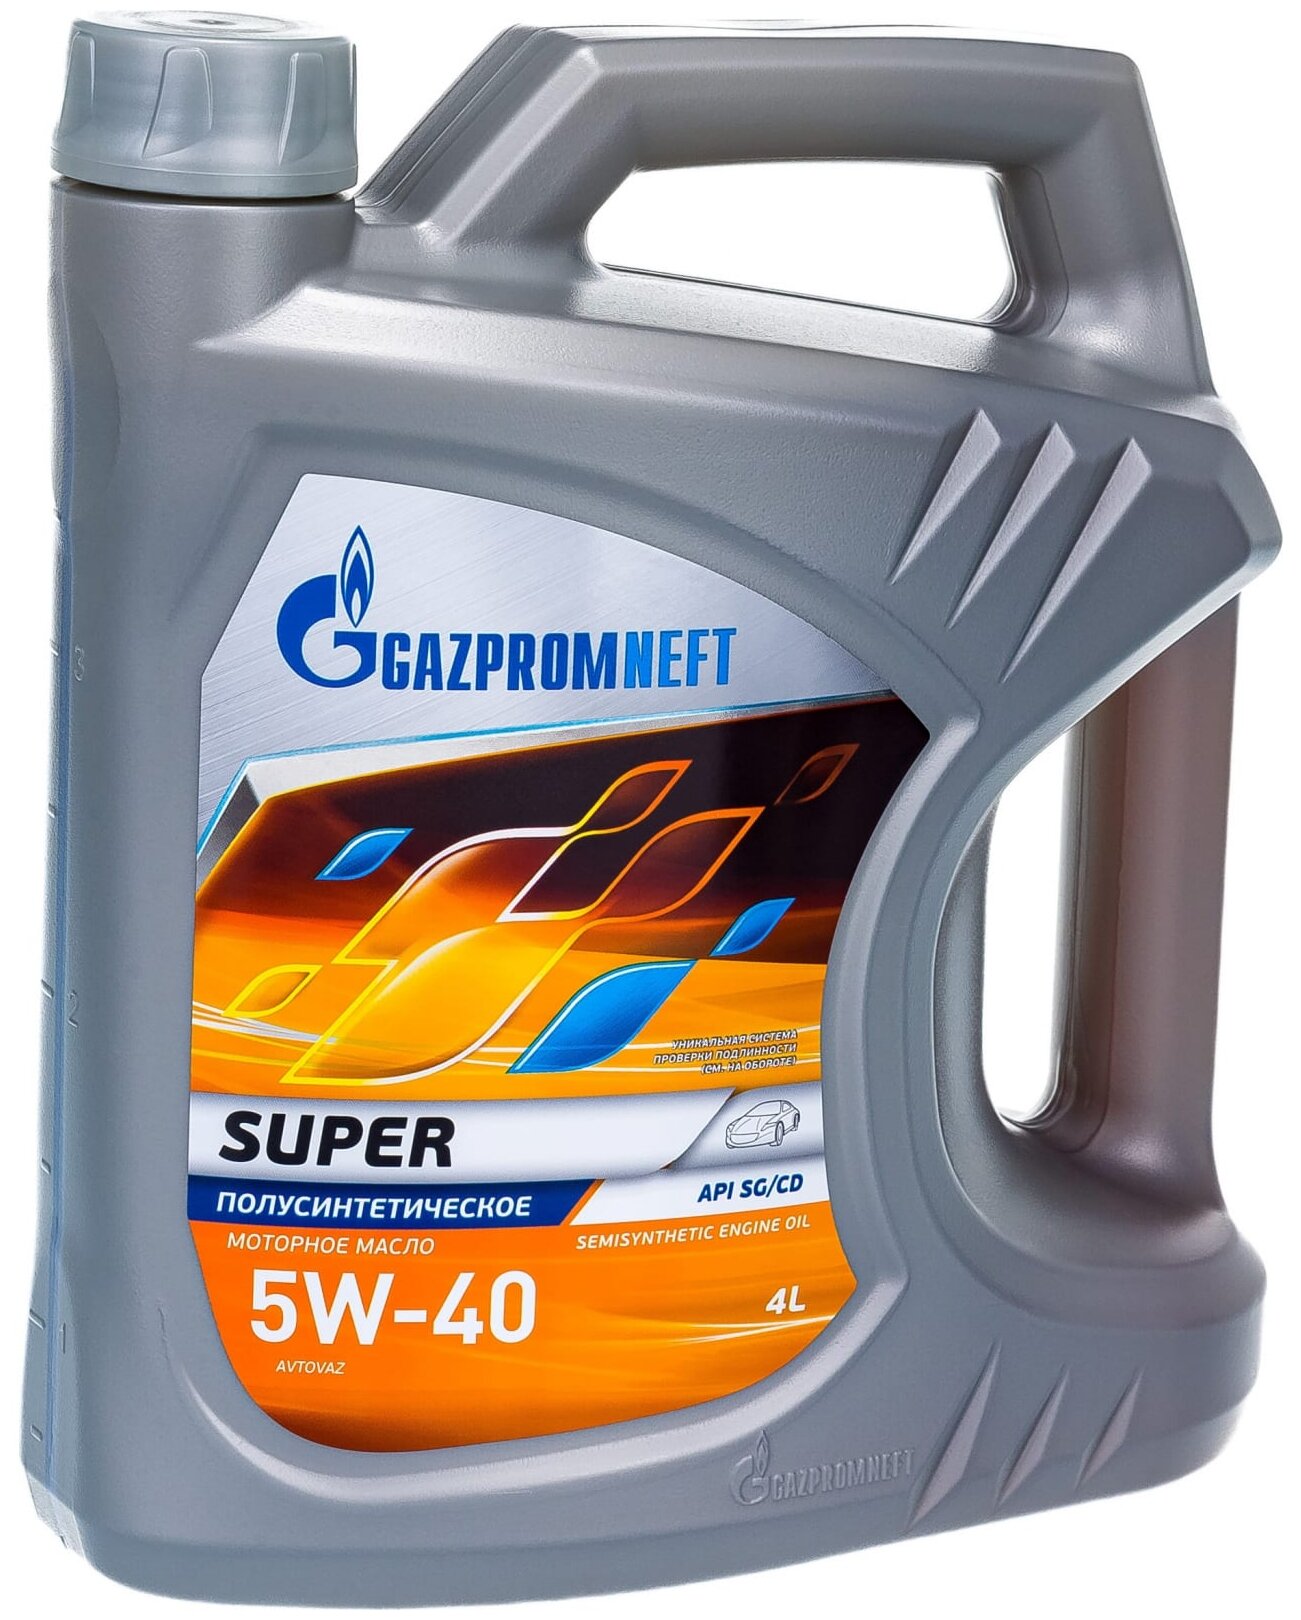 Полусинтетическое моторное масло Газпромнефть Super 5W-40